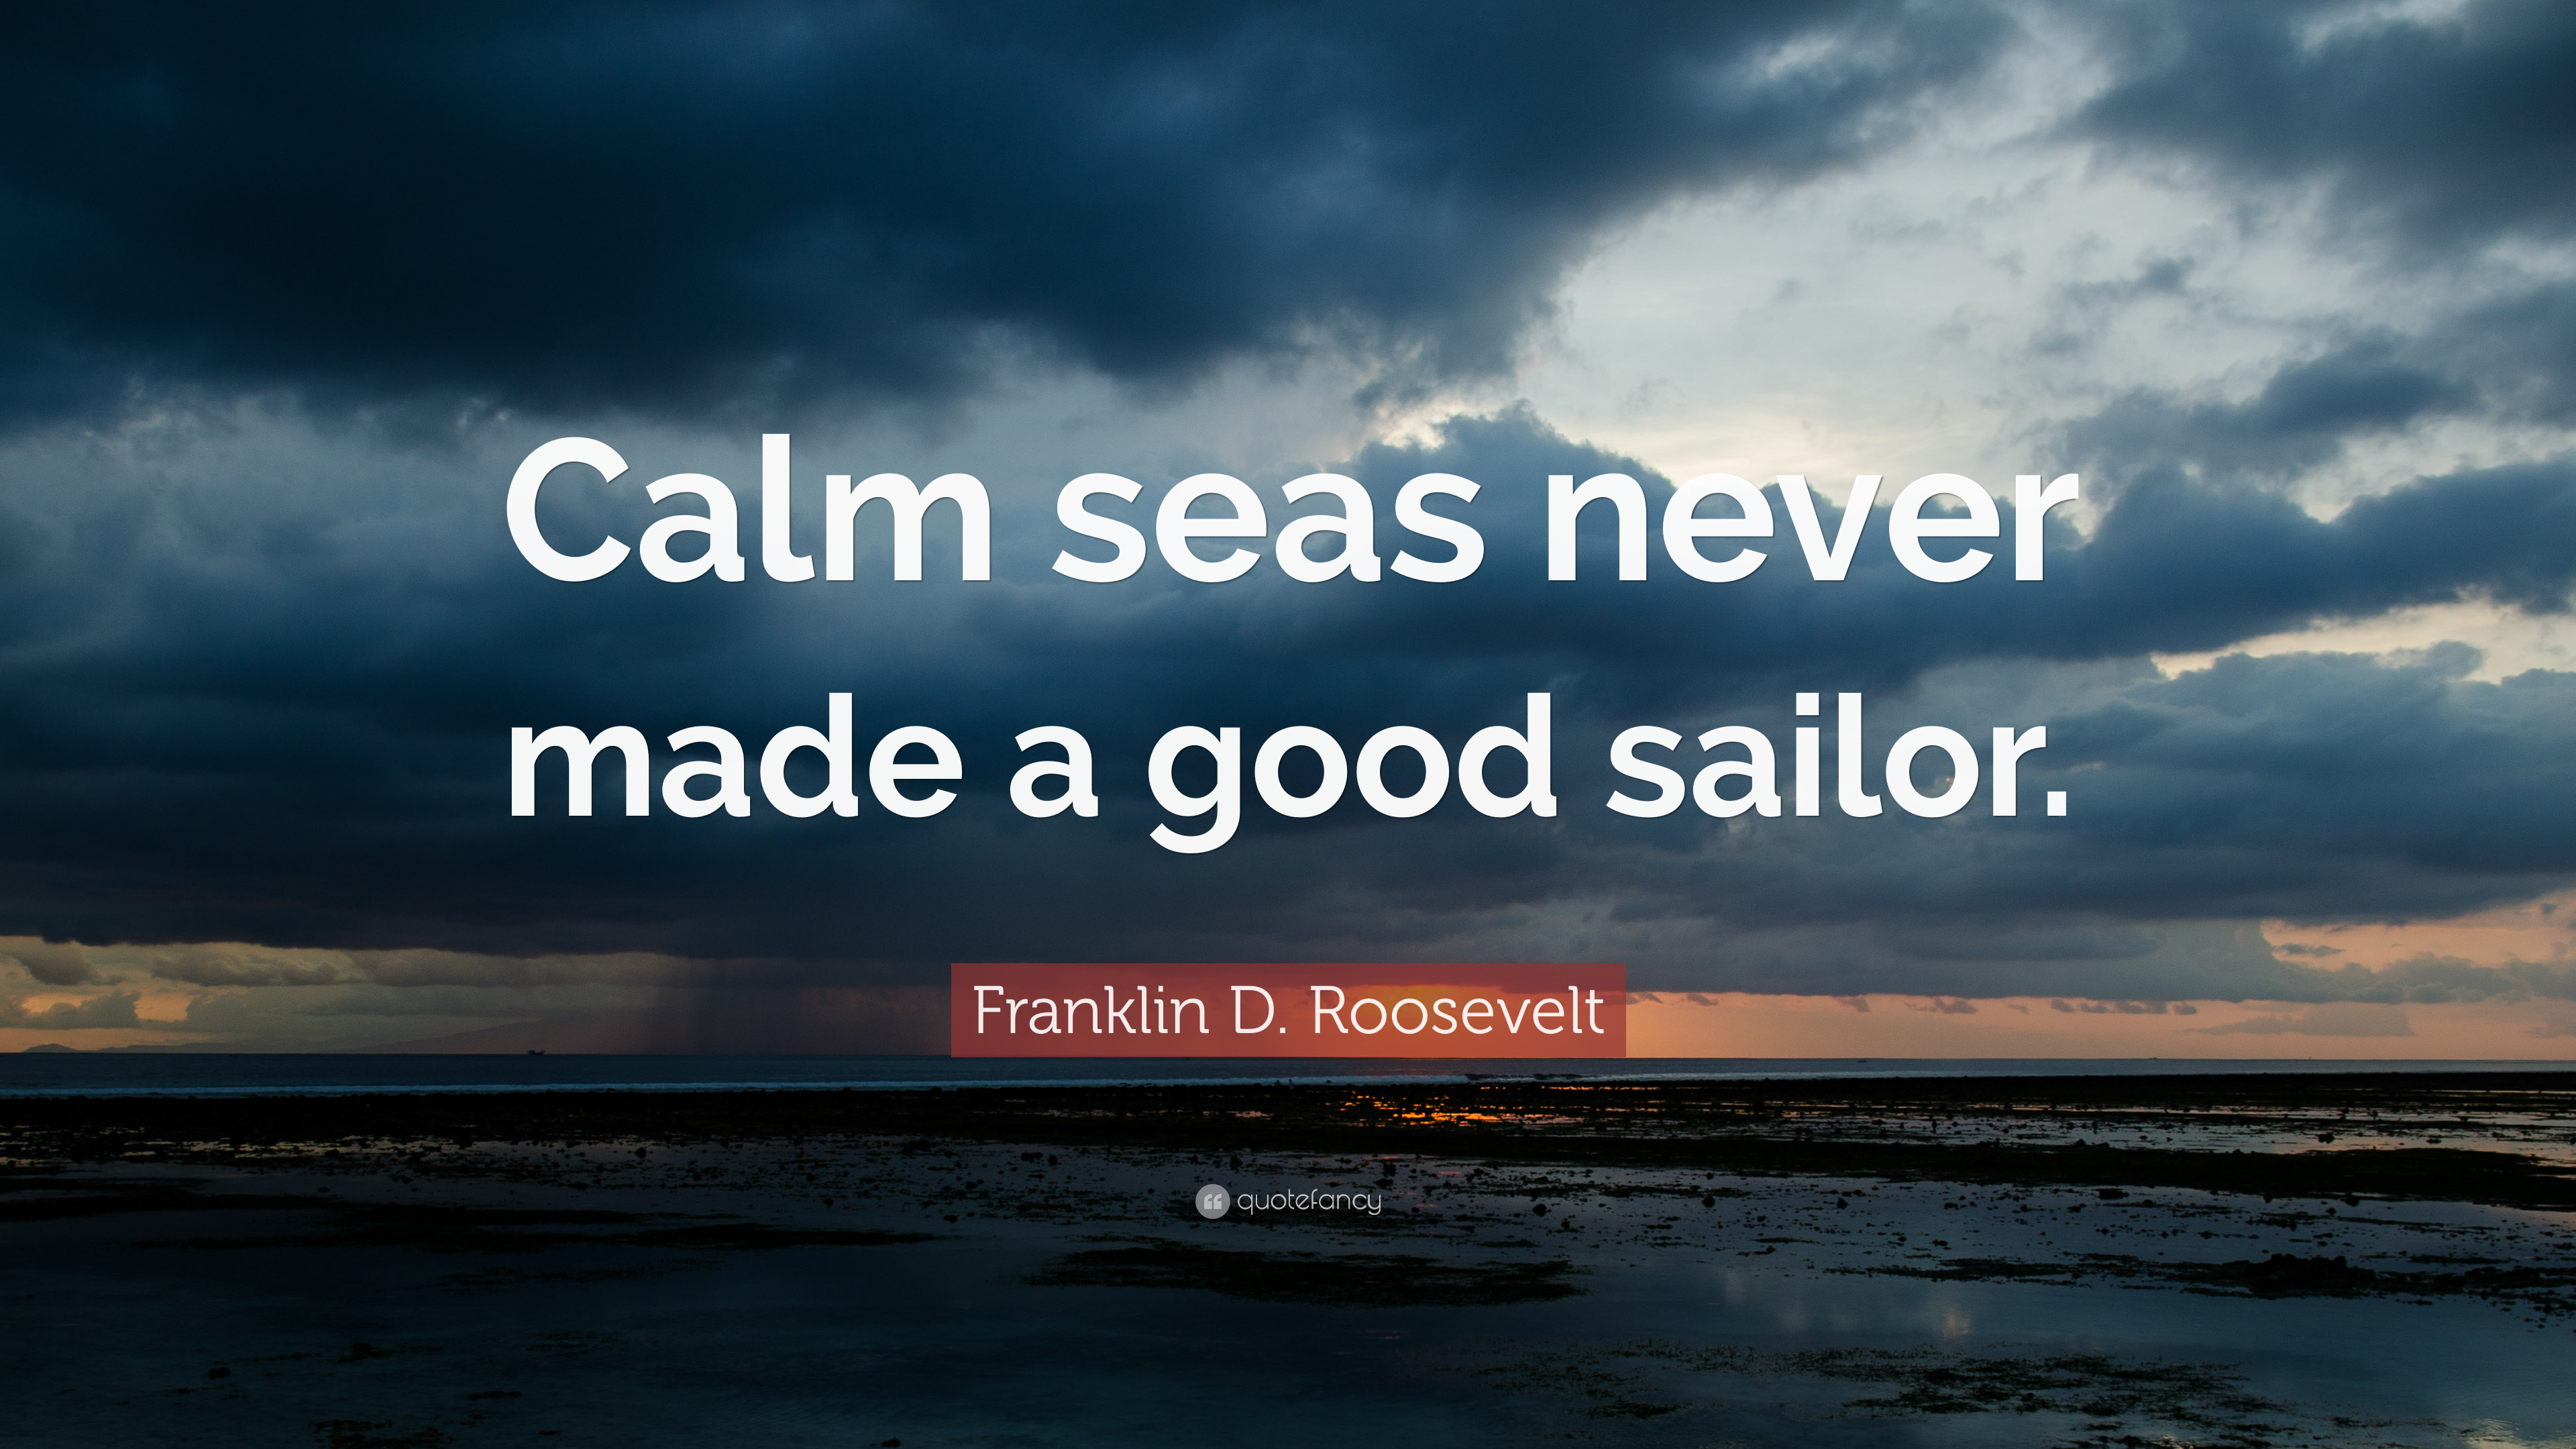 Franklin D. Roosevelt Quote: “Calm seas never made a good sailor ...